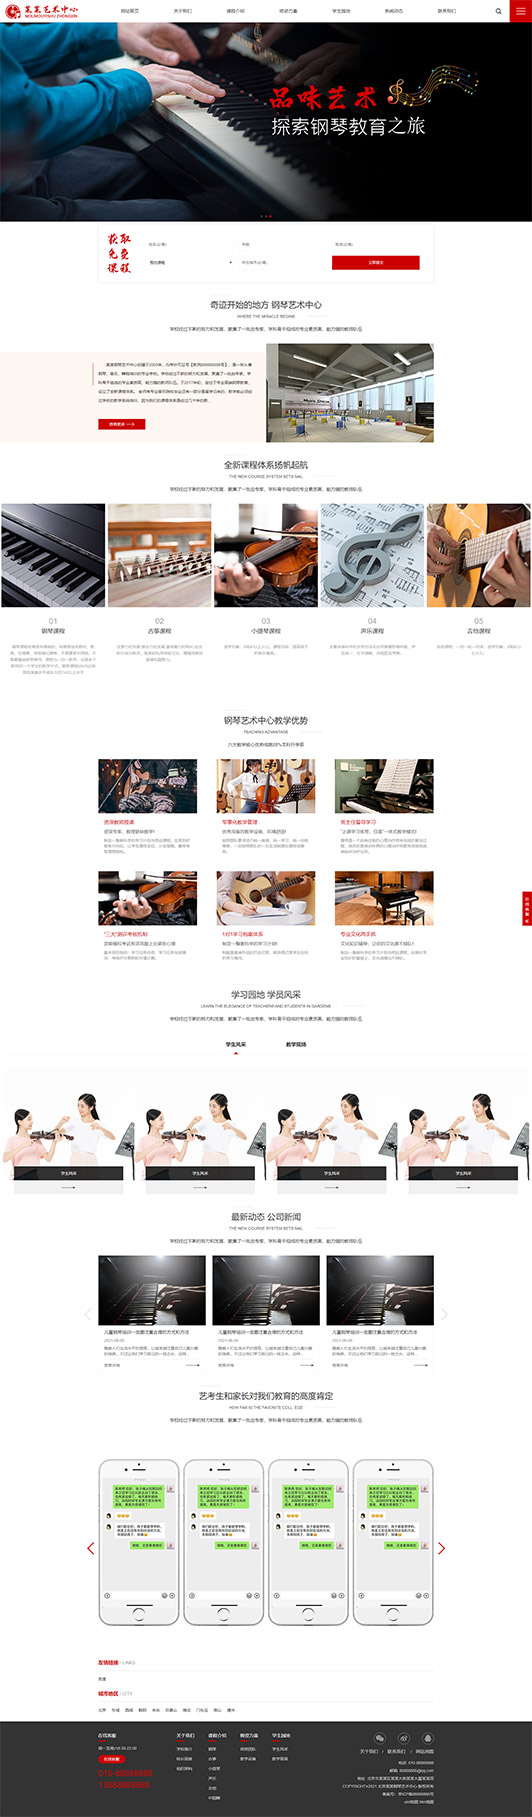 邯郸钢琴艺术培训公司响应式企业网站